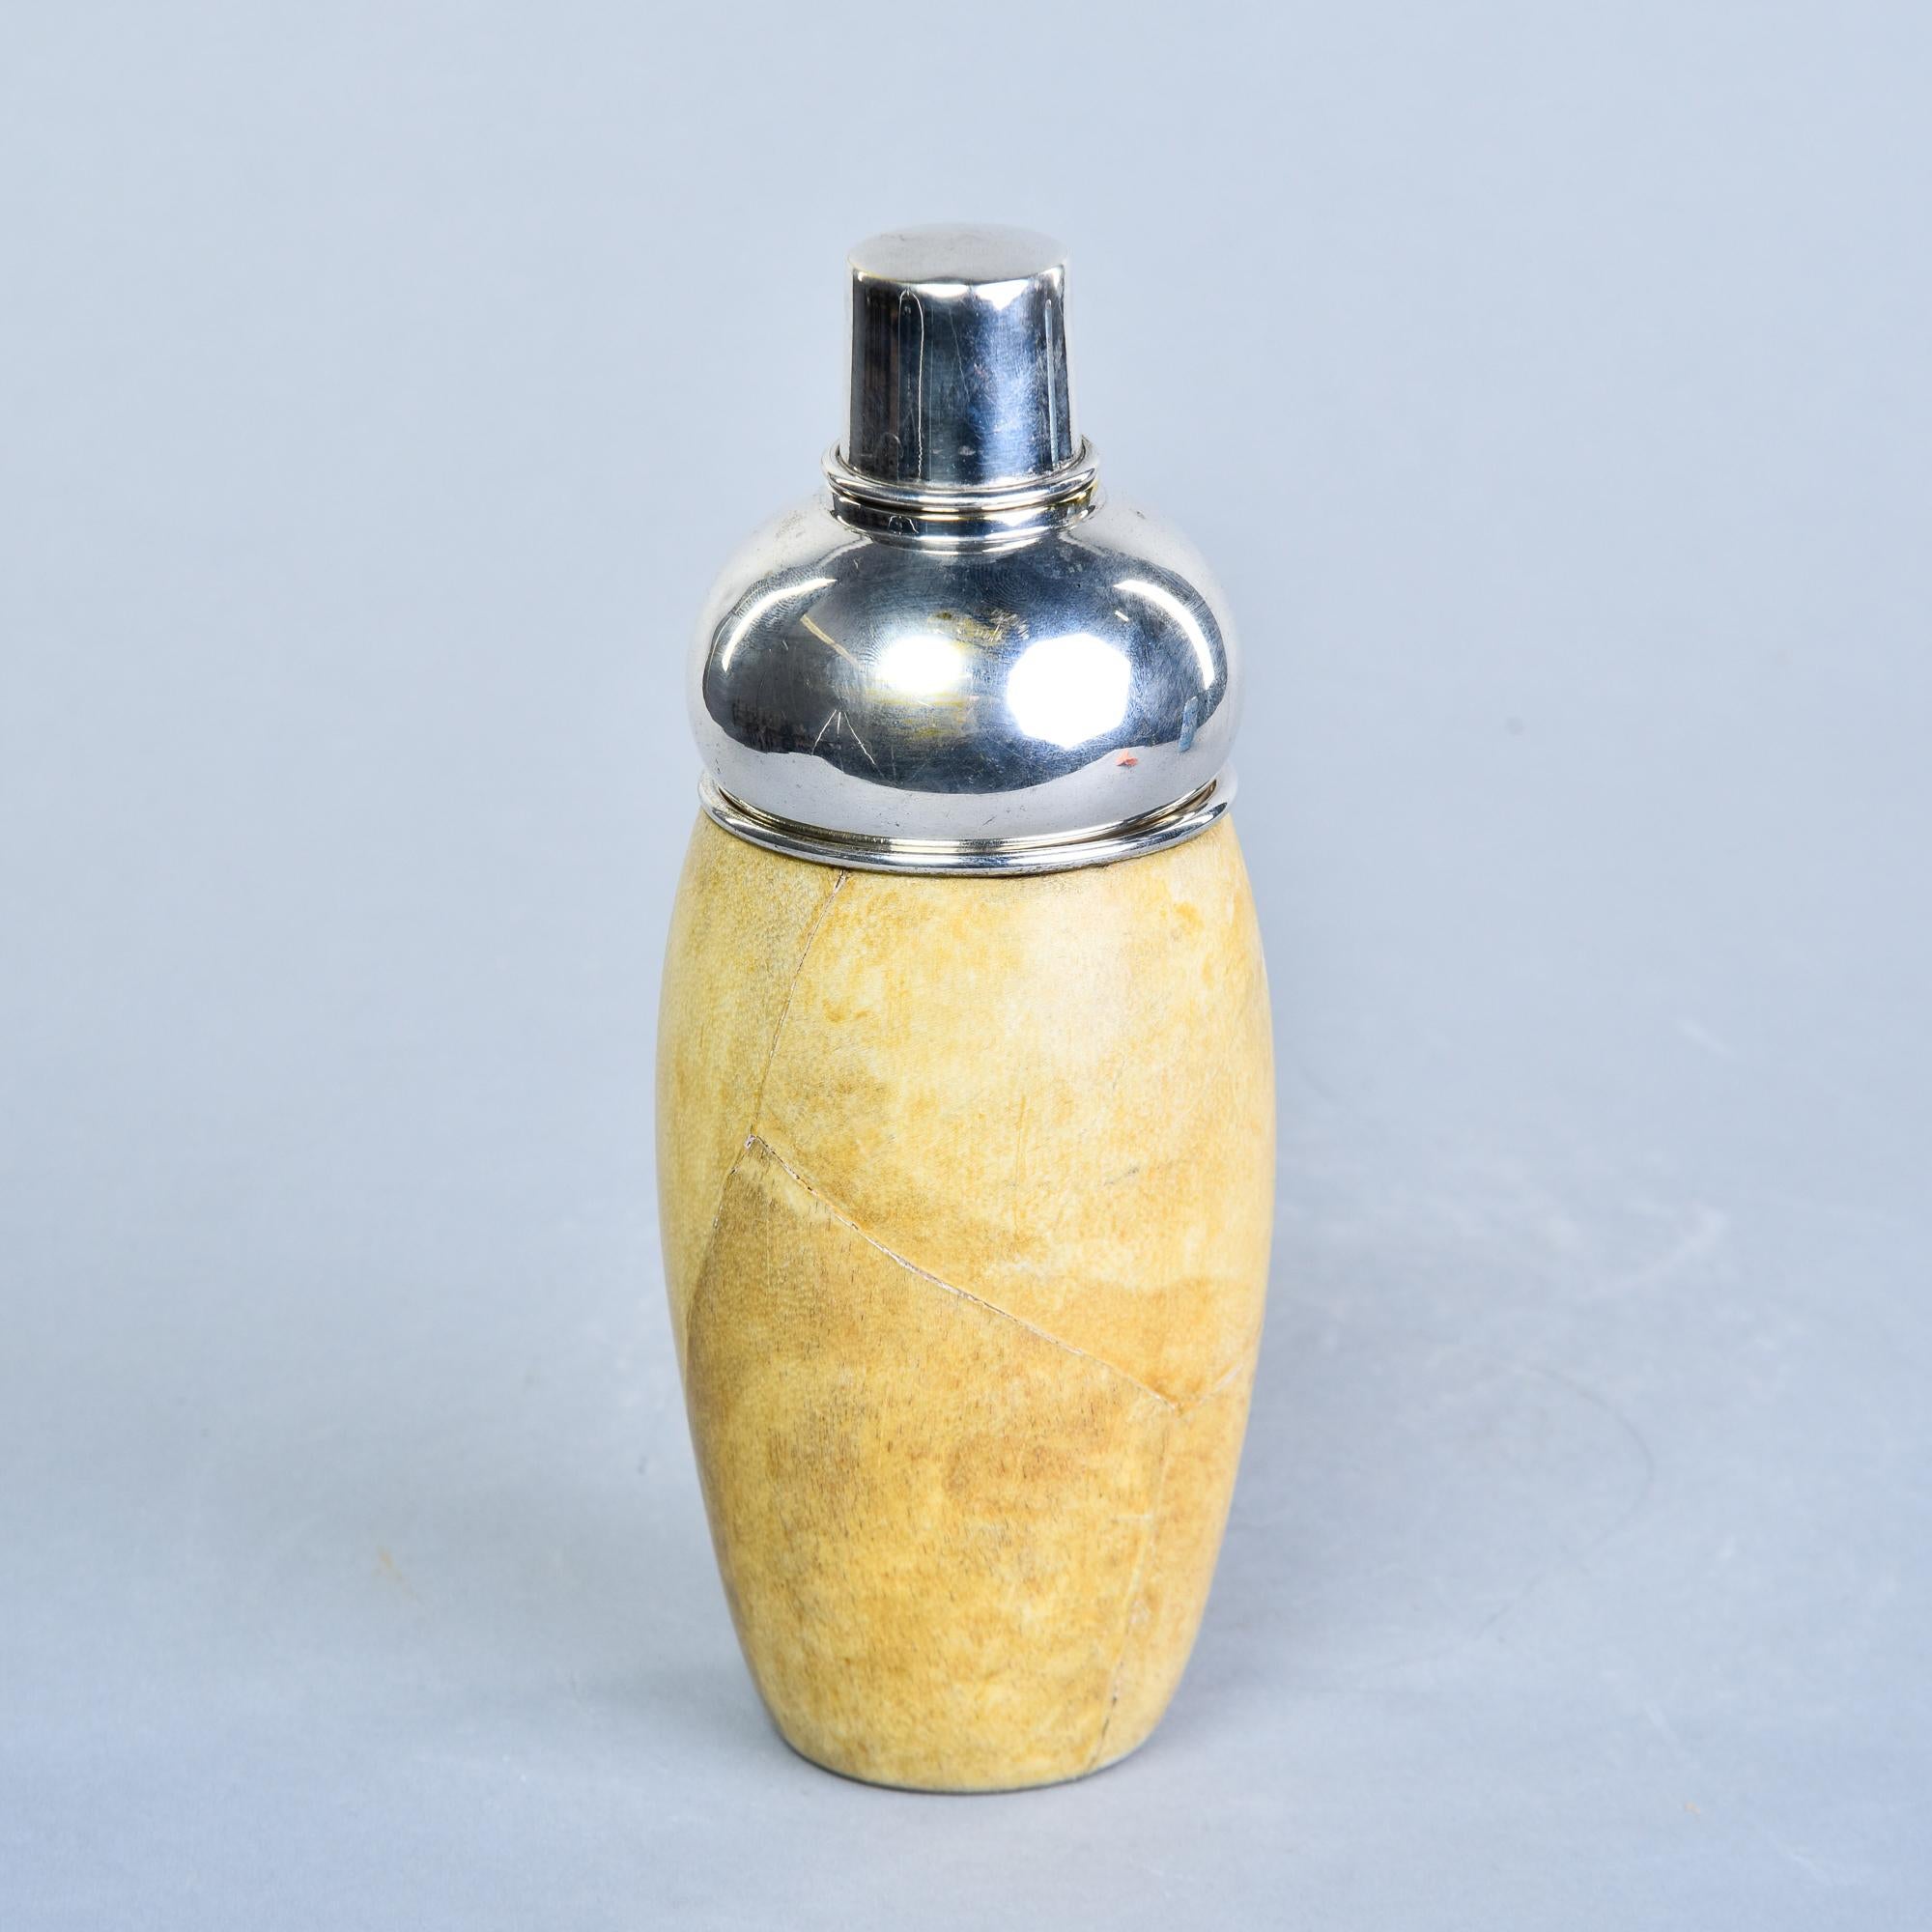 Trouvé en Italie, ce shaker Aldo Tura date des années 1950. Le corps du Shakers est une coque en bois recouverte de cuir de chèvre avec un revêtement intérieur en acier inoxydable. Dessus et crépine amovibles en acier. Le cuir a une belle couleur